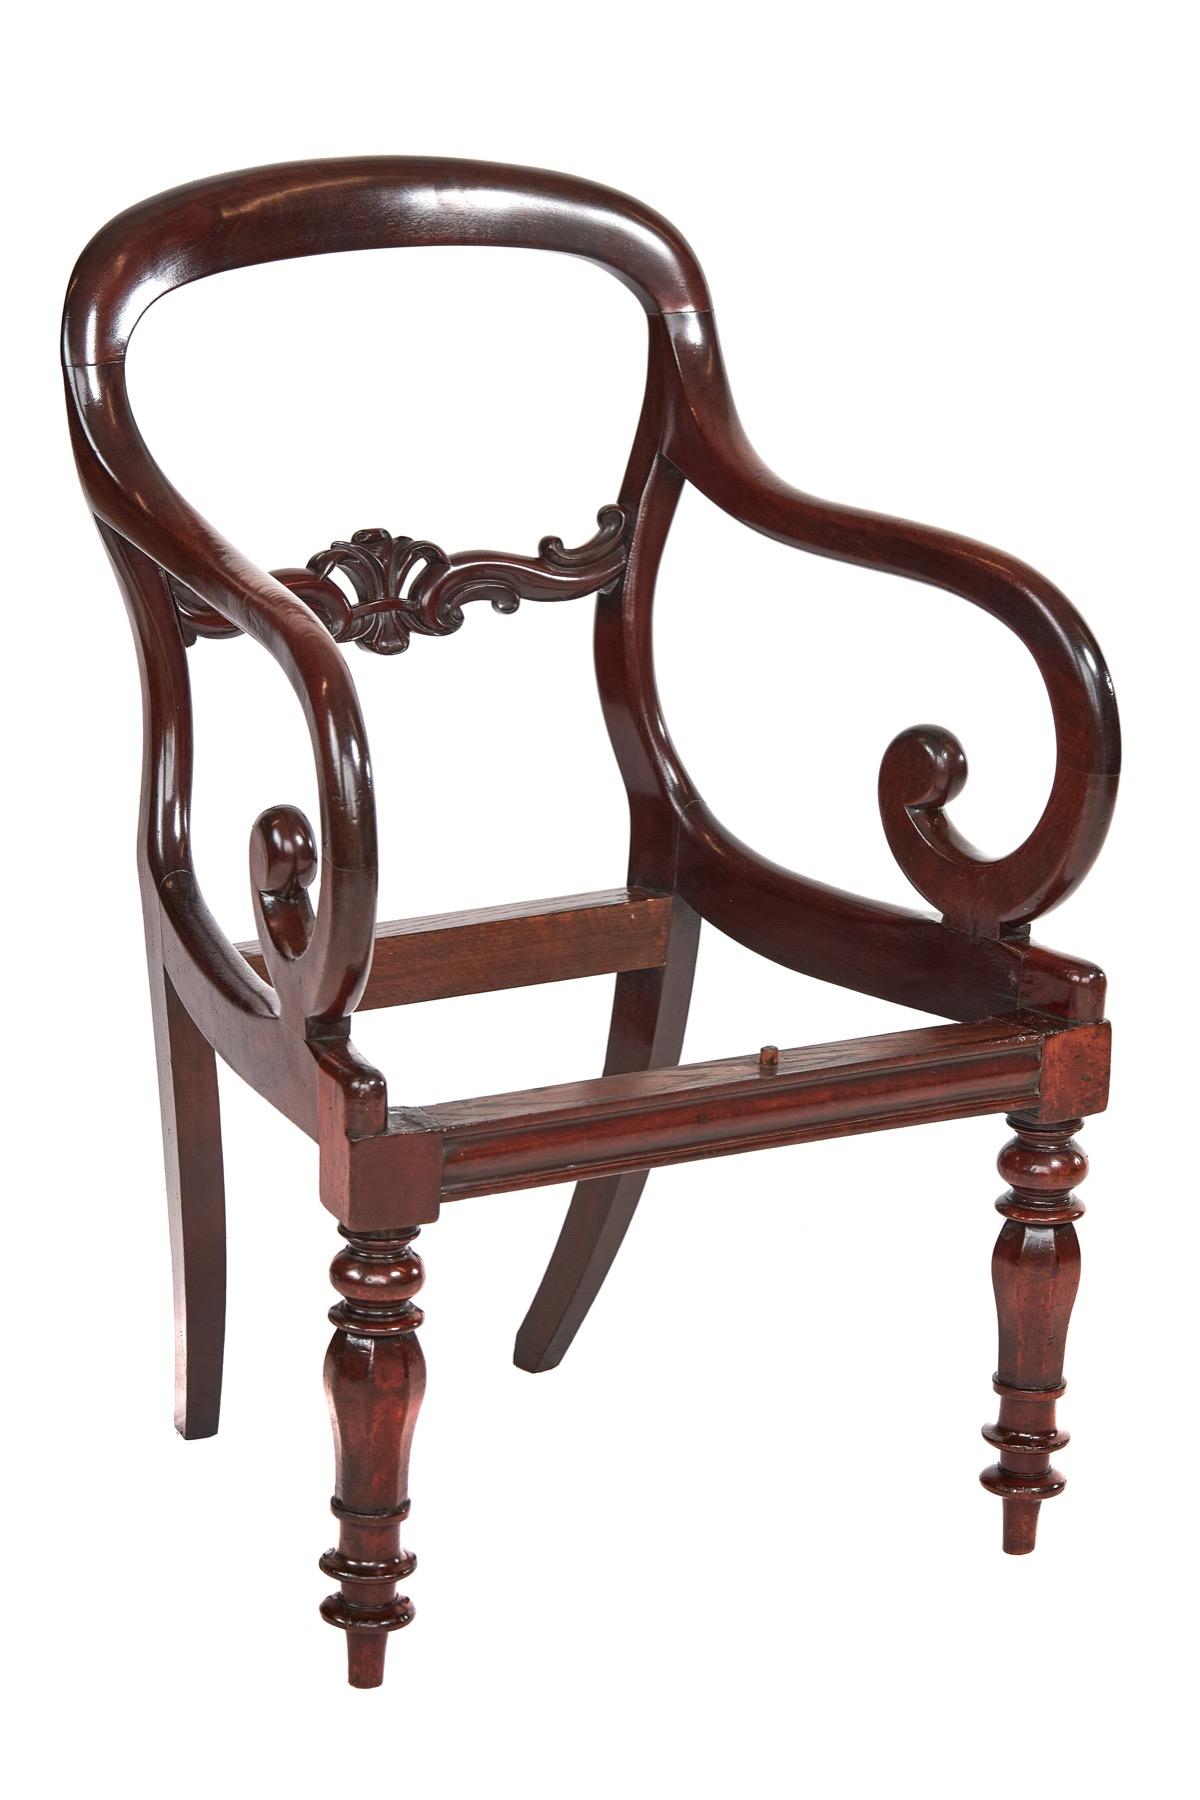 William IV W1v Period Mahogany Desk Elbow Chair